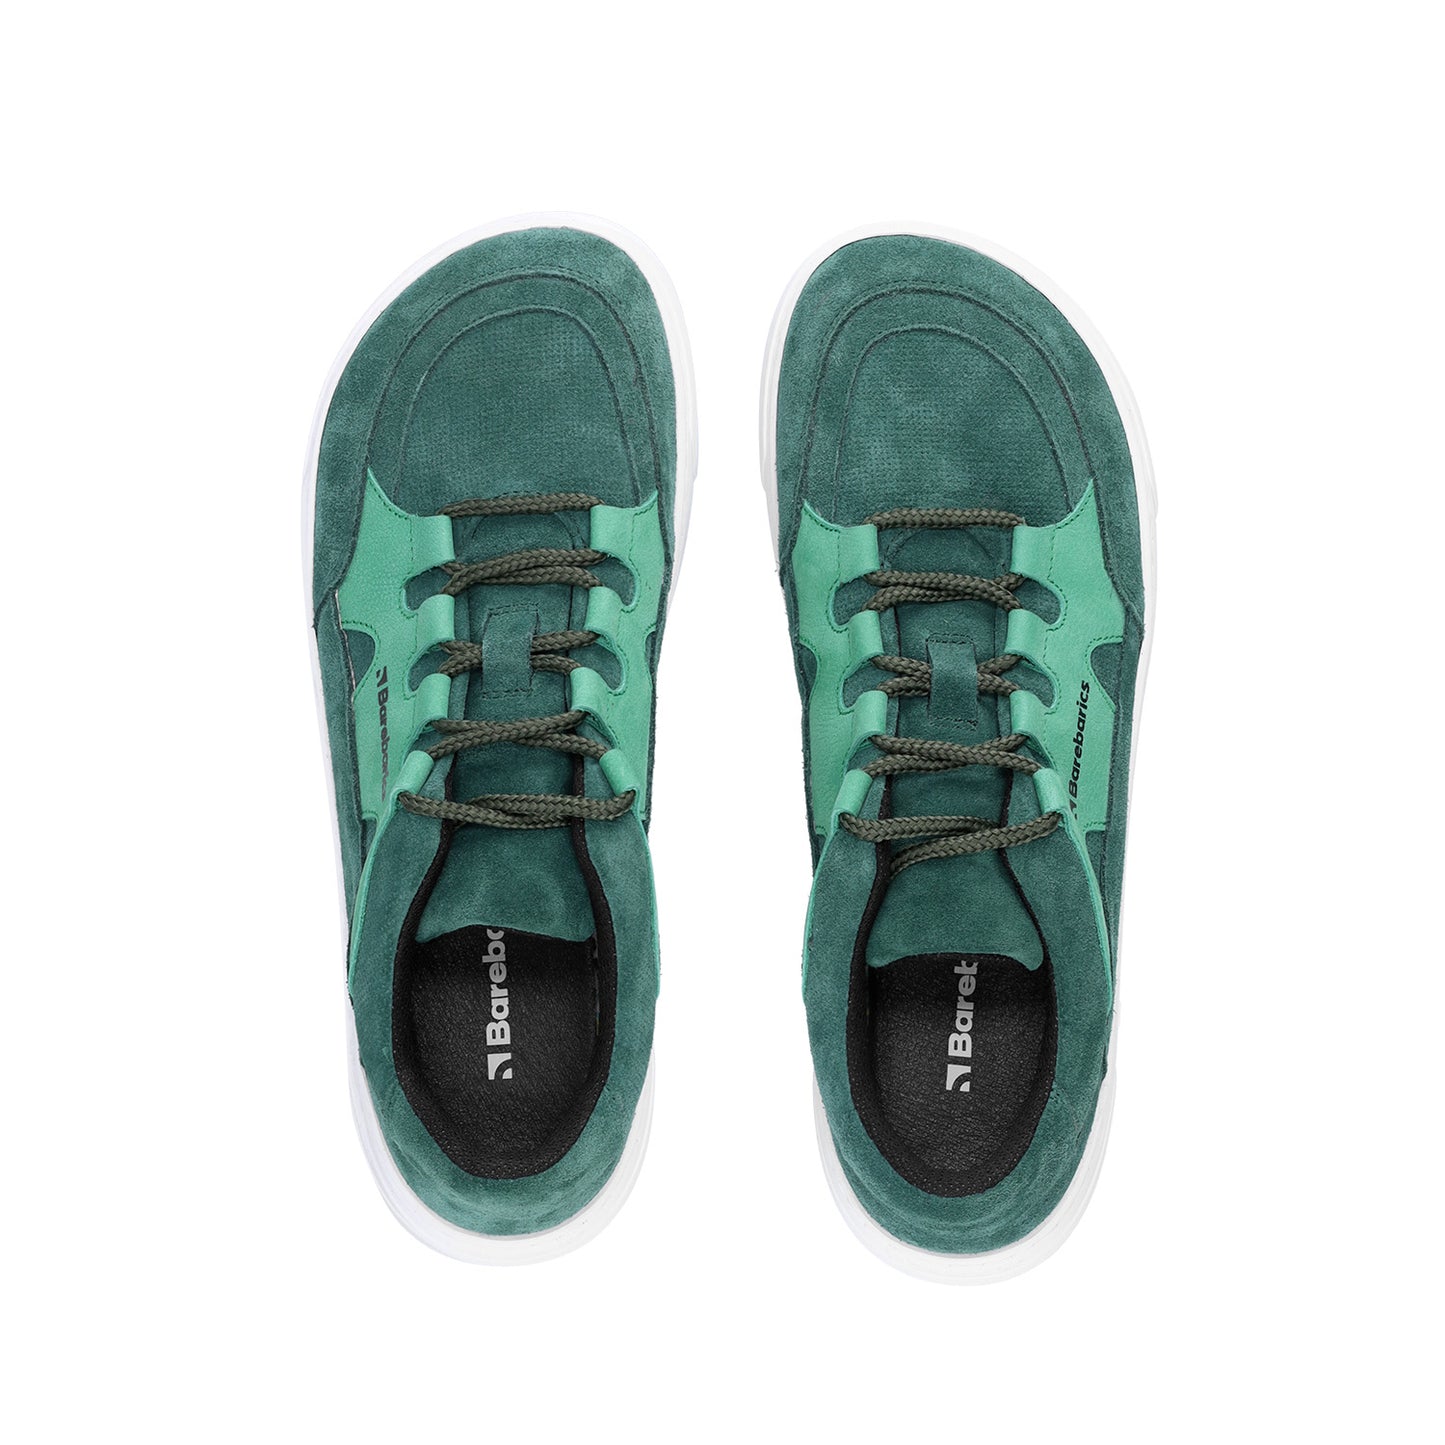 Barebarics Evo Barefoot Sneakers - Dark Green & White